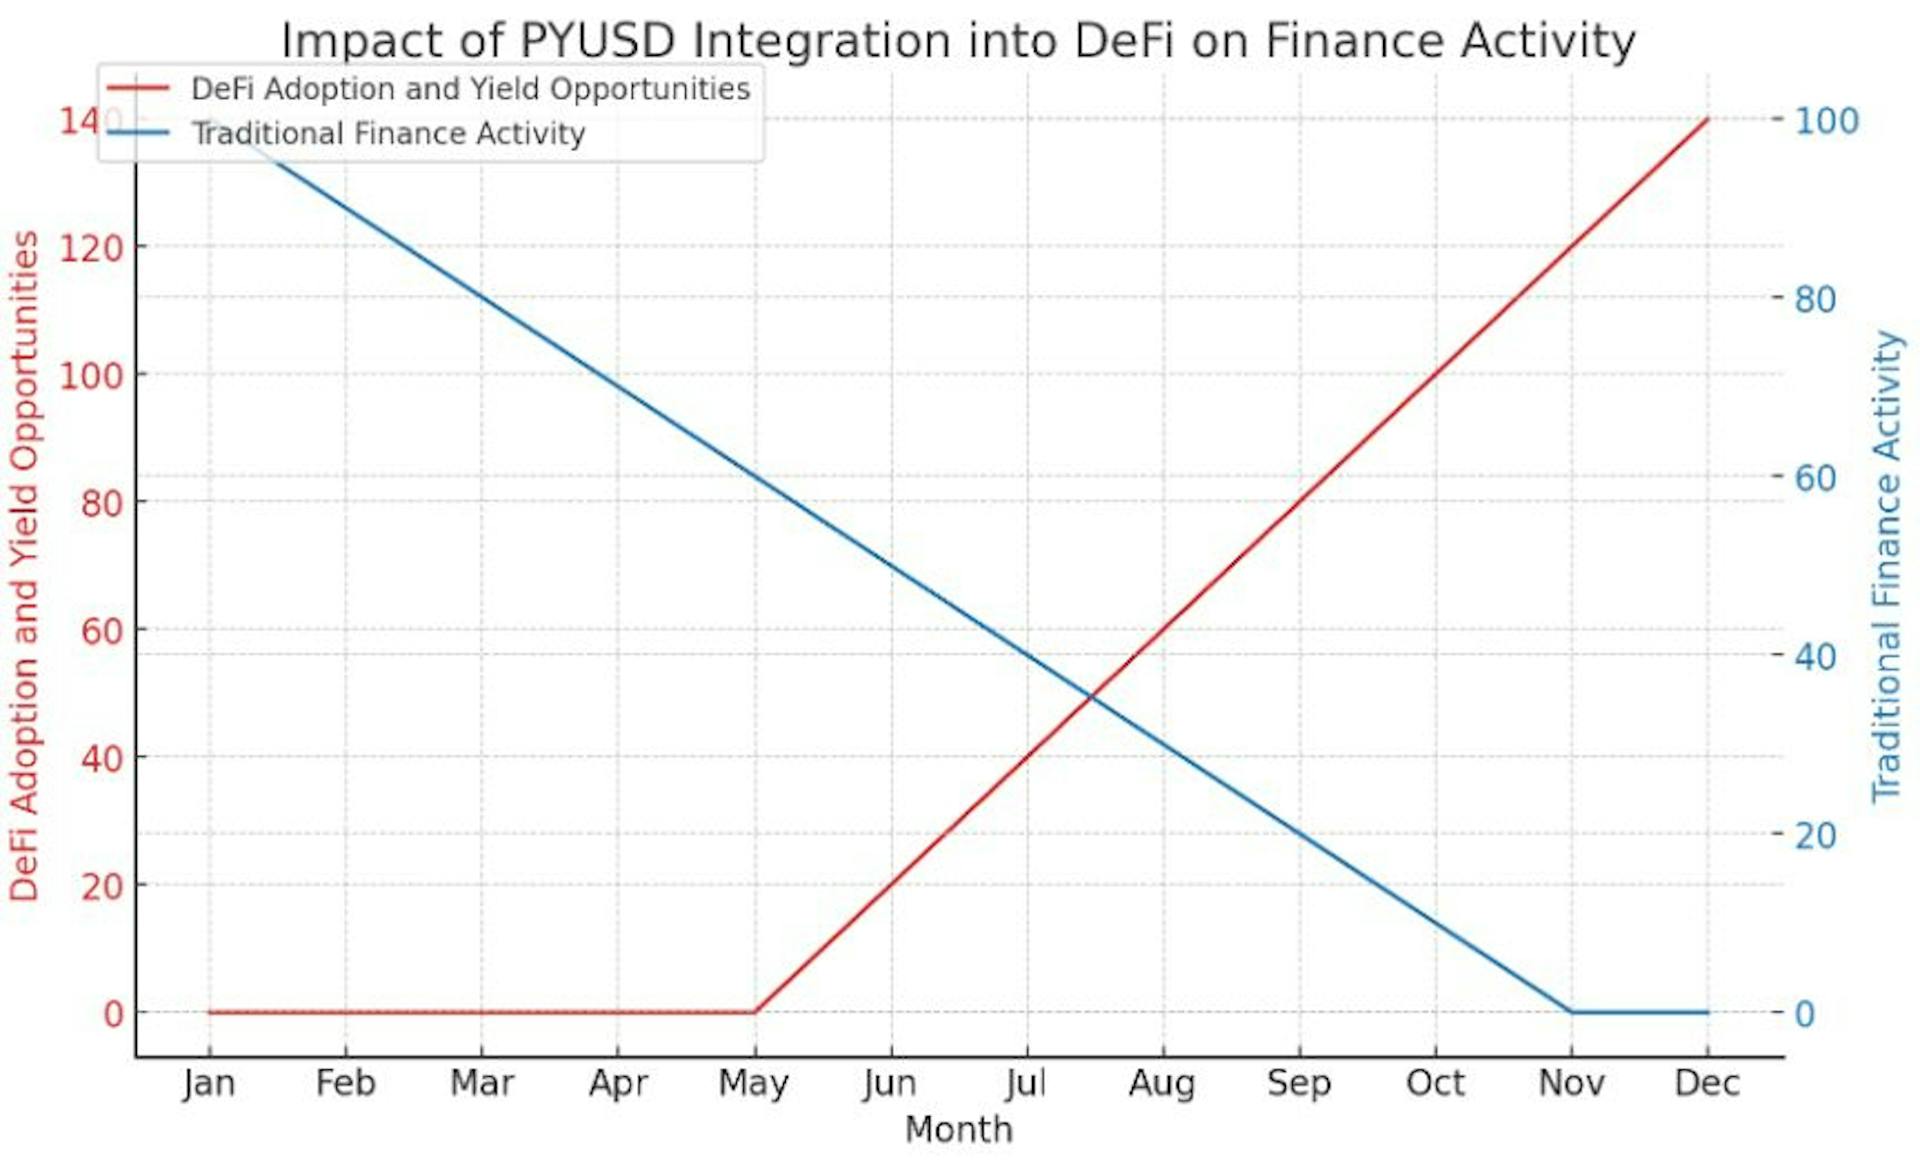 Le graphique visualise l'impact hypothétique de l'intégration du PYUSD dans l'écosystème DeFi, montrant une augmentation significative de l'adoption de DeFi et des opportunités de rendement au fil du temps.